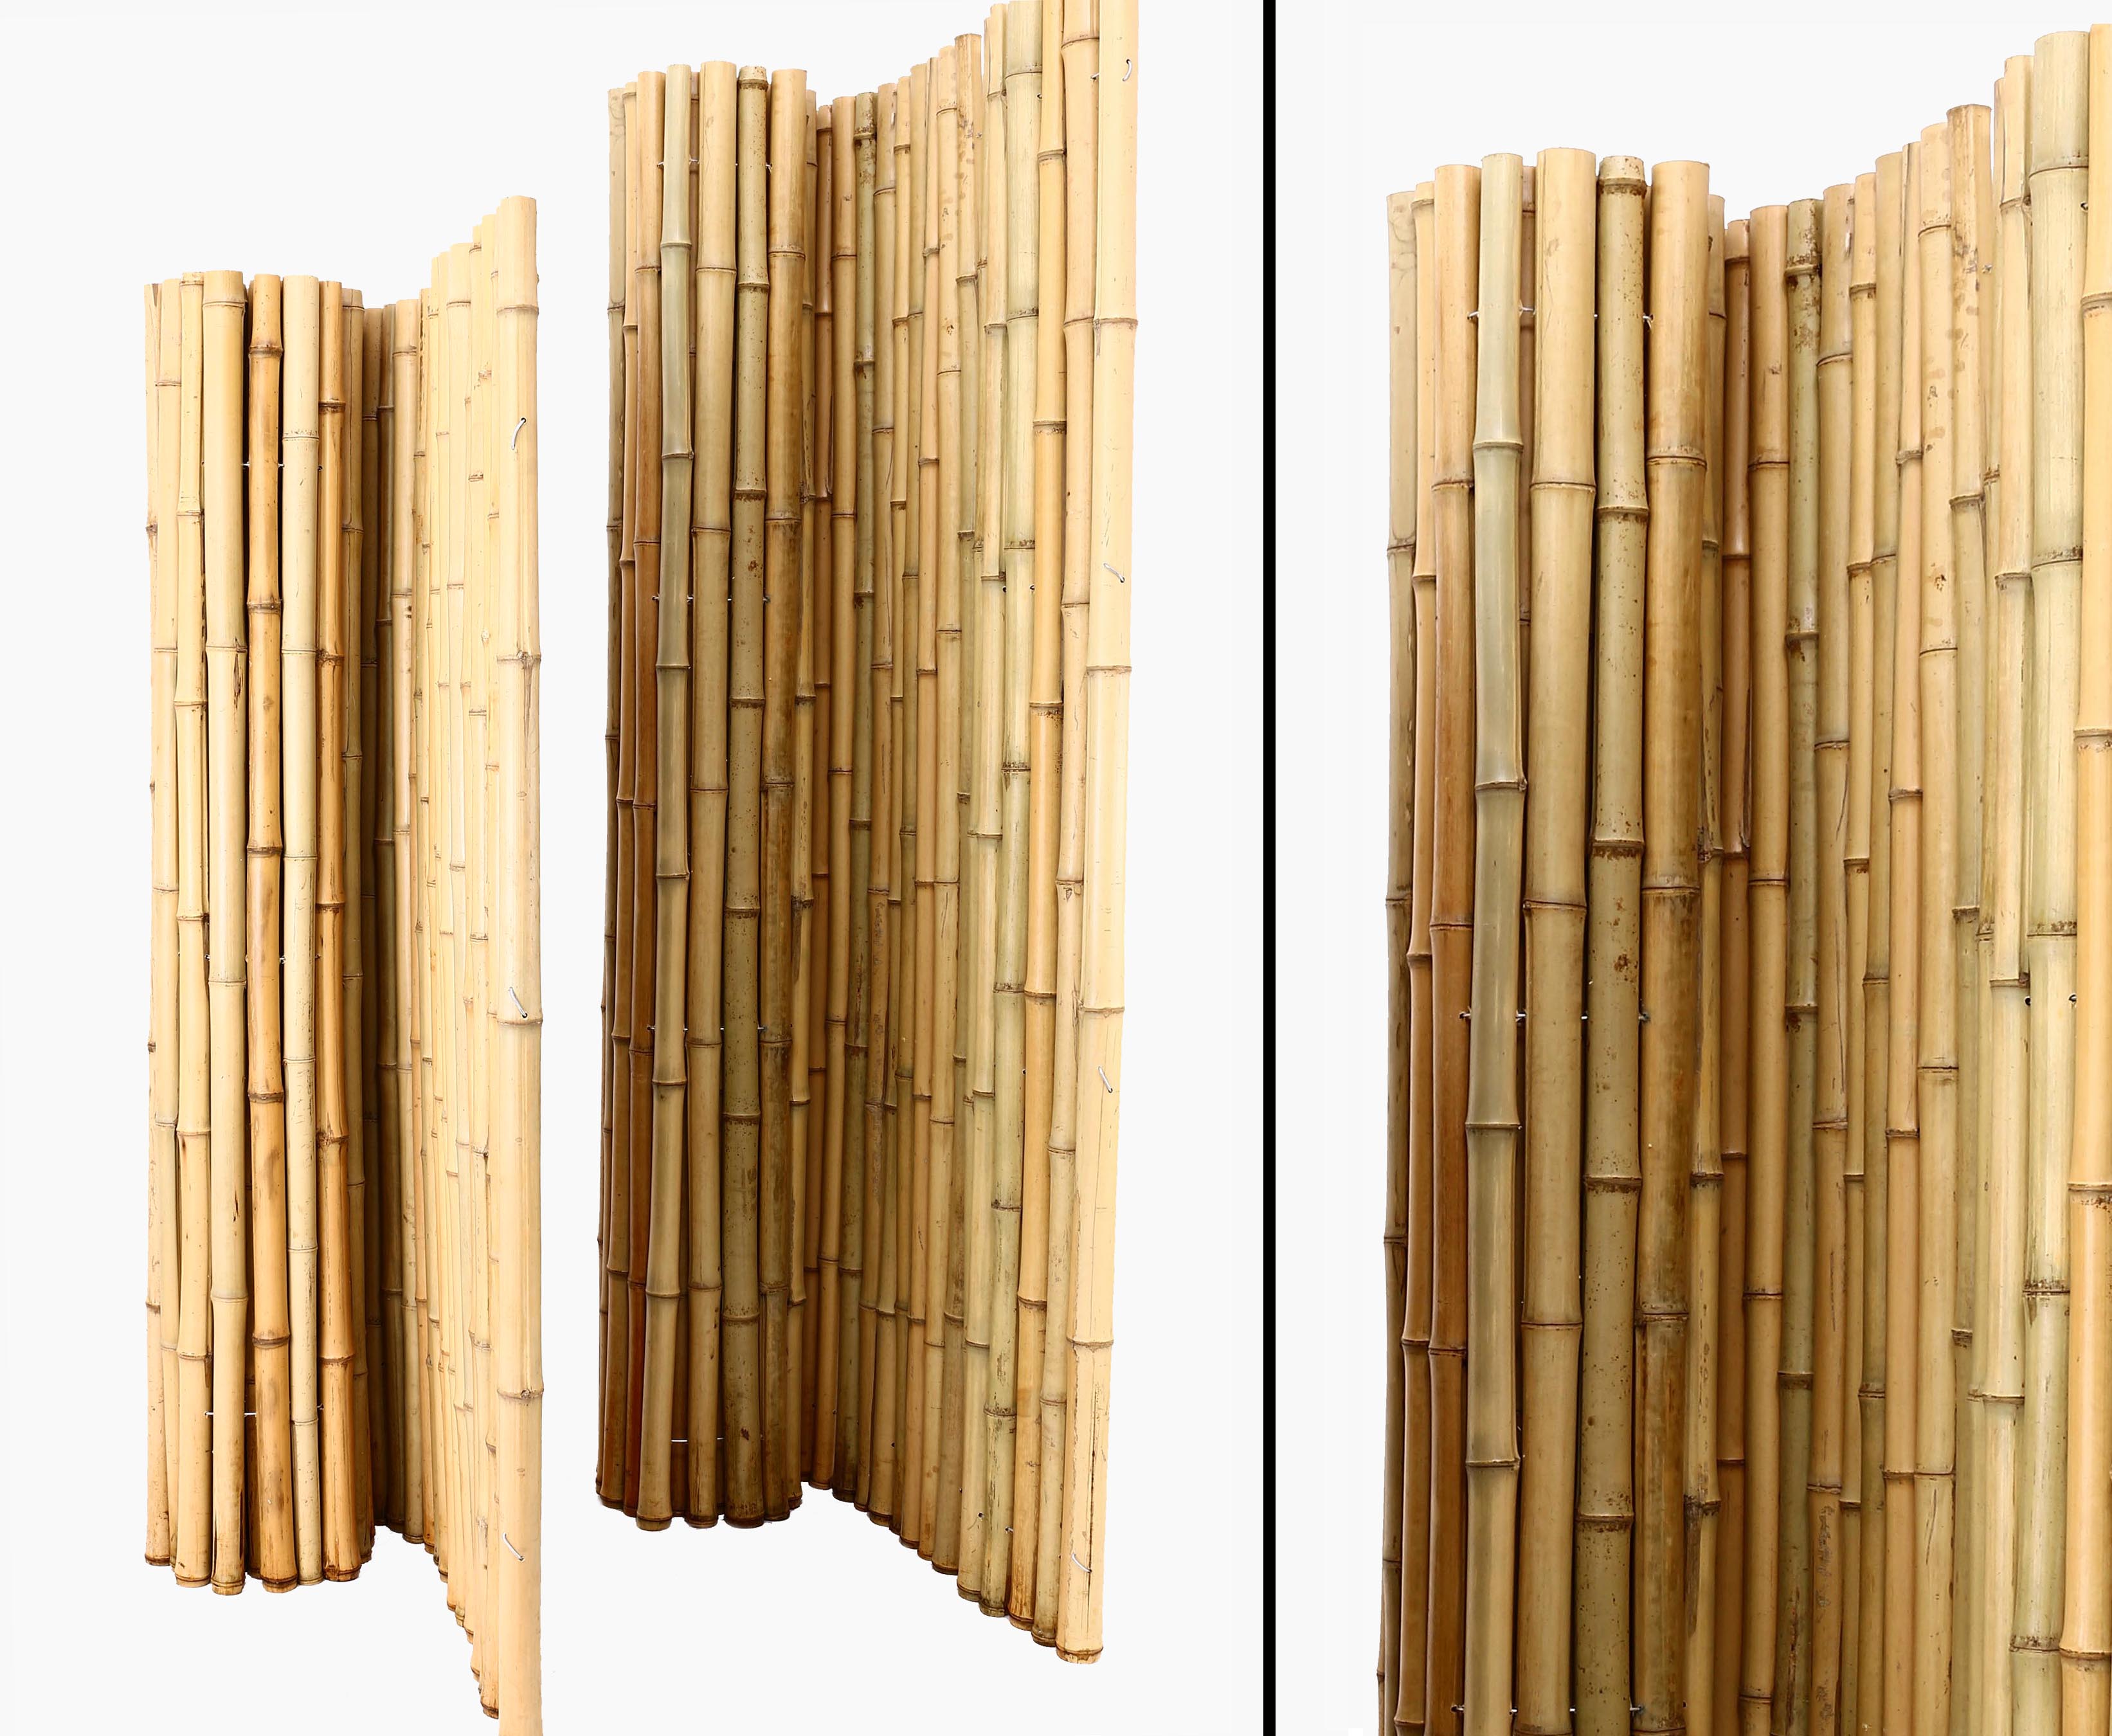 Bambus Sichtschutz günstig mit 150 x 500 cm Bambusmatte Rio eco Modell 